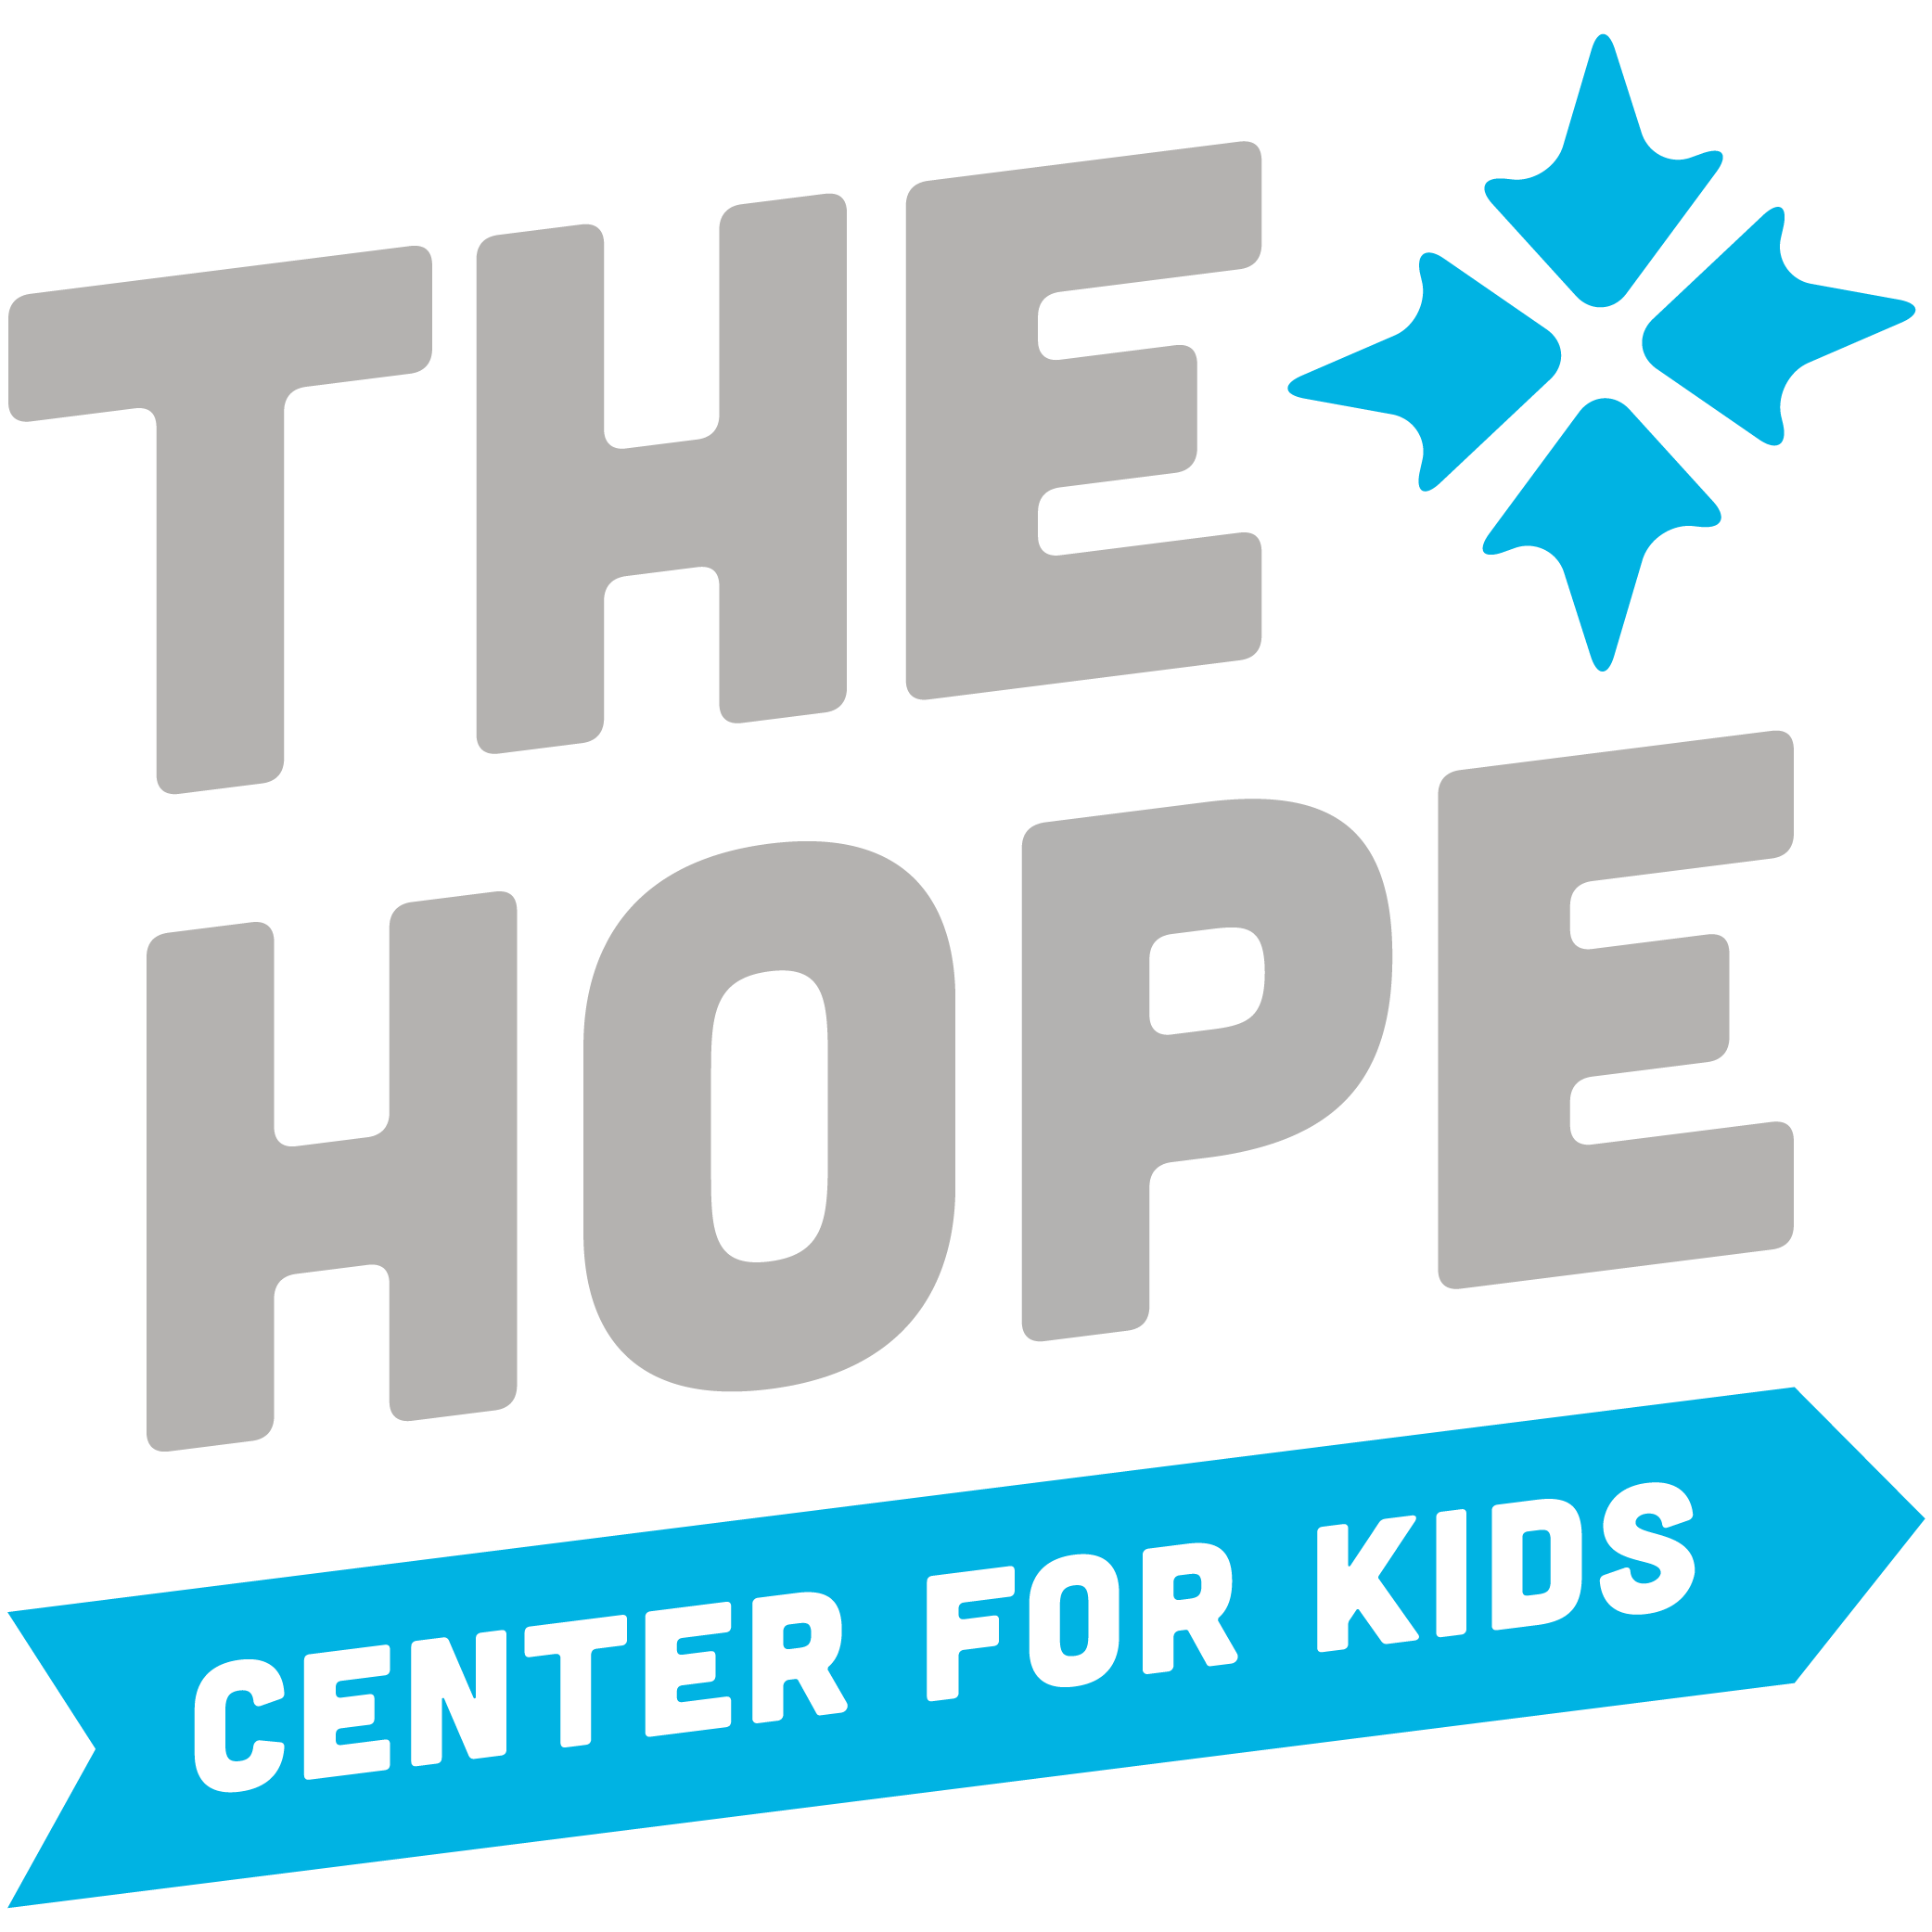 The Hope Center for Kids logo